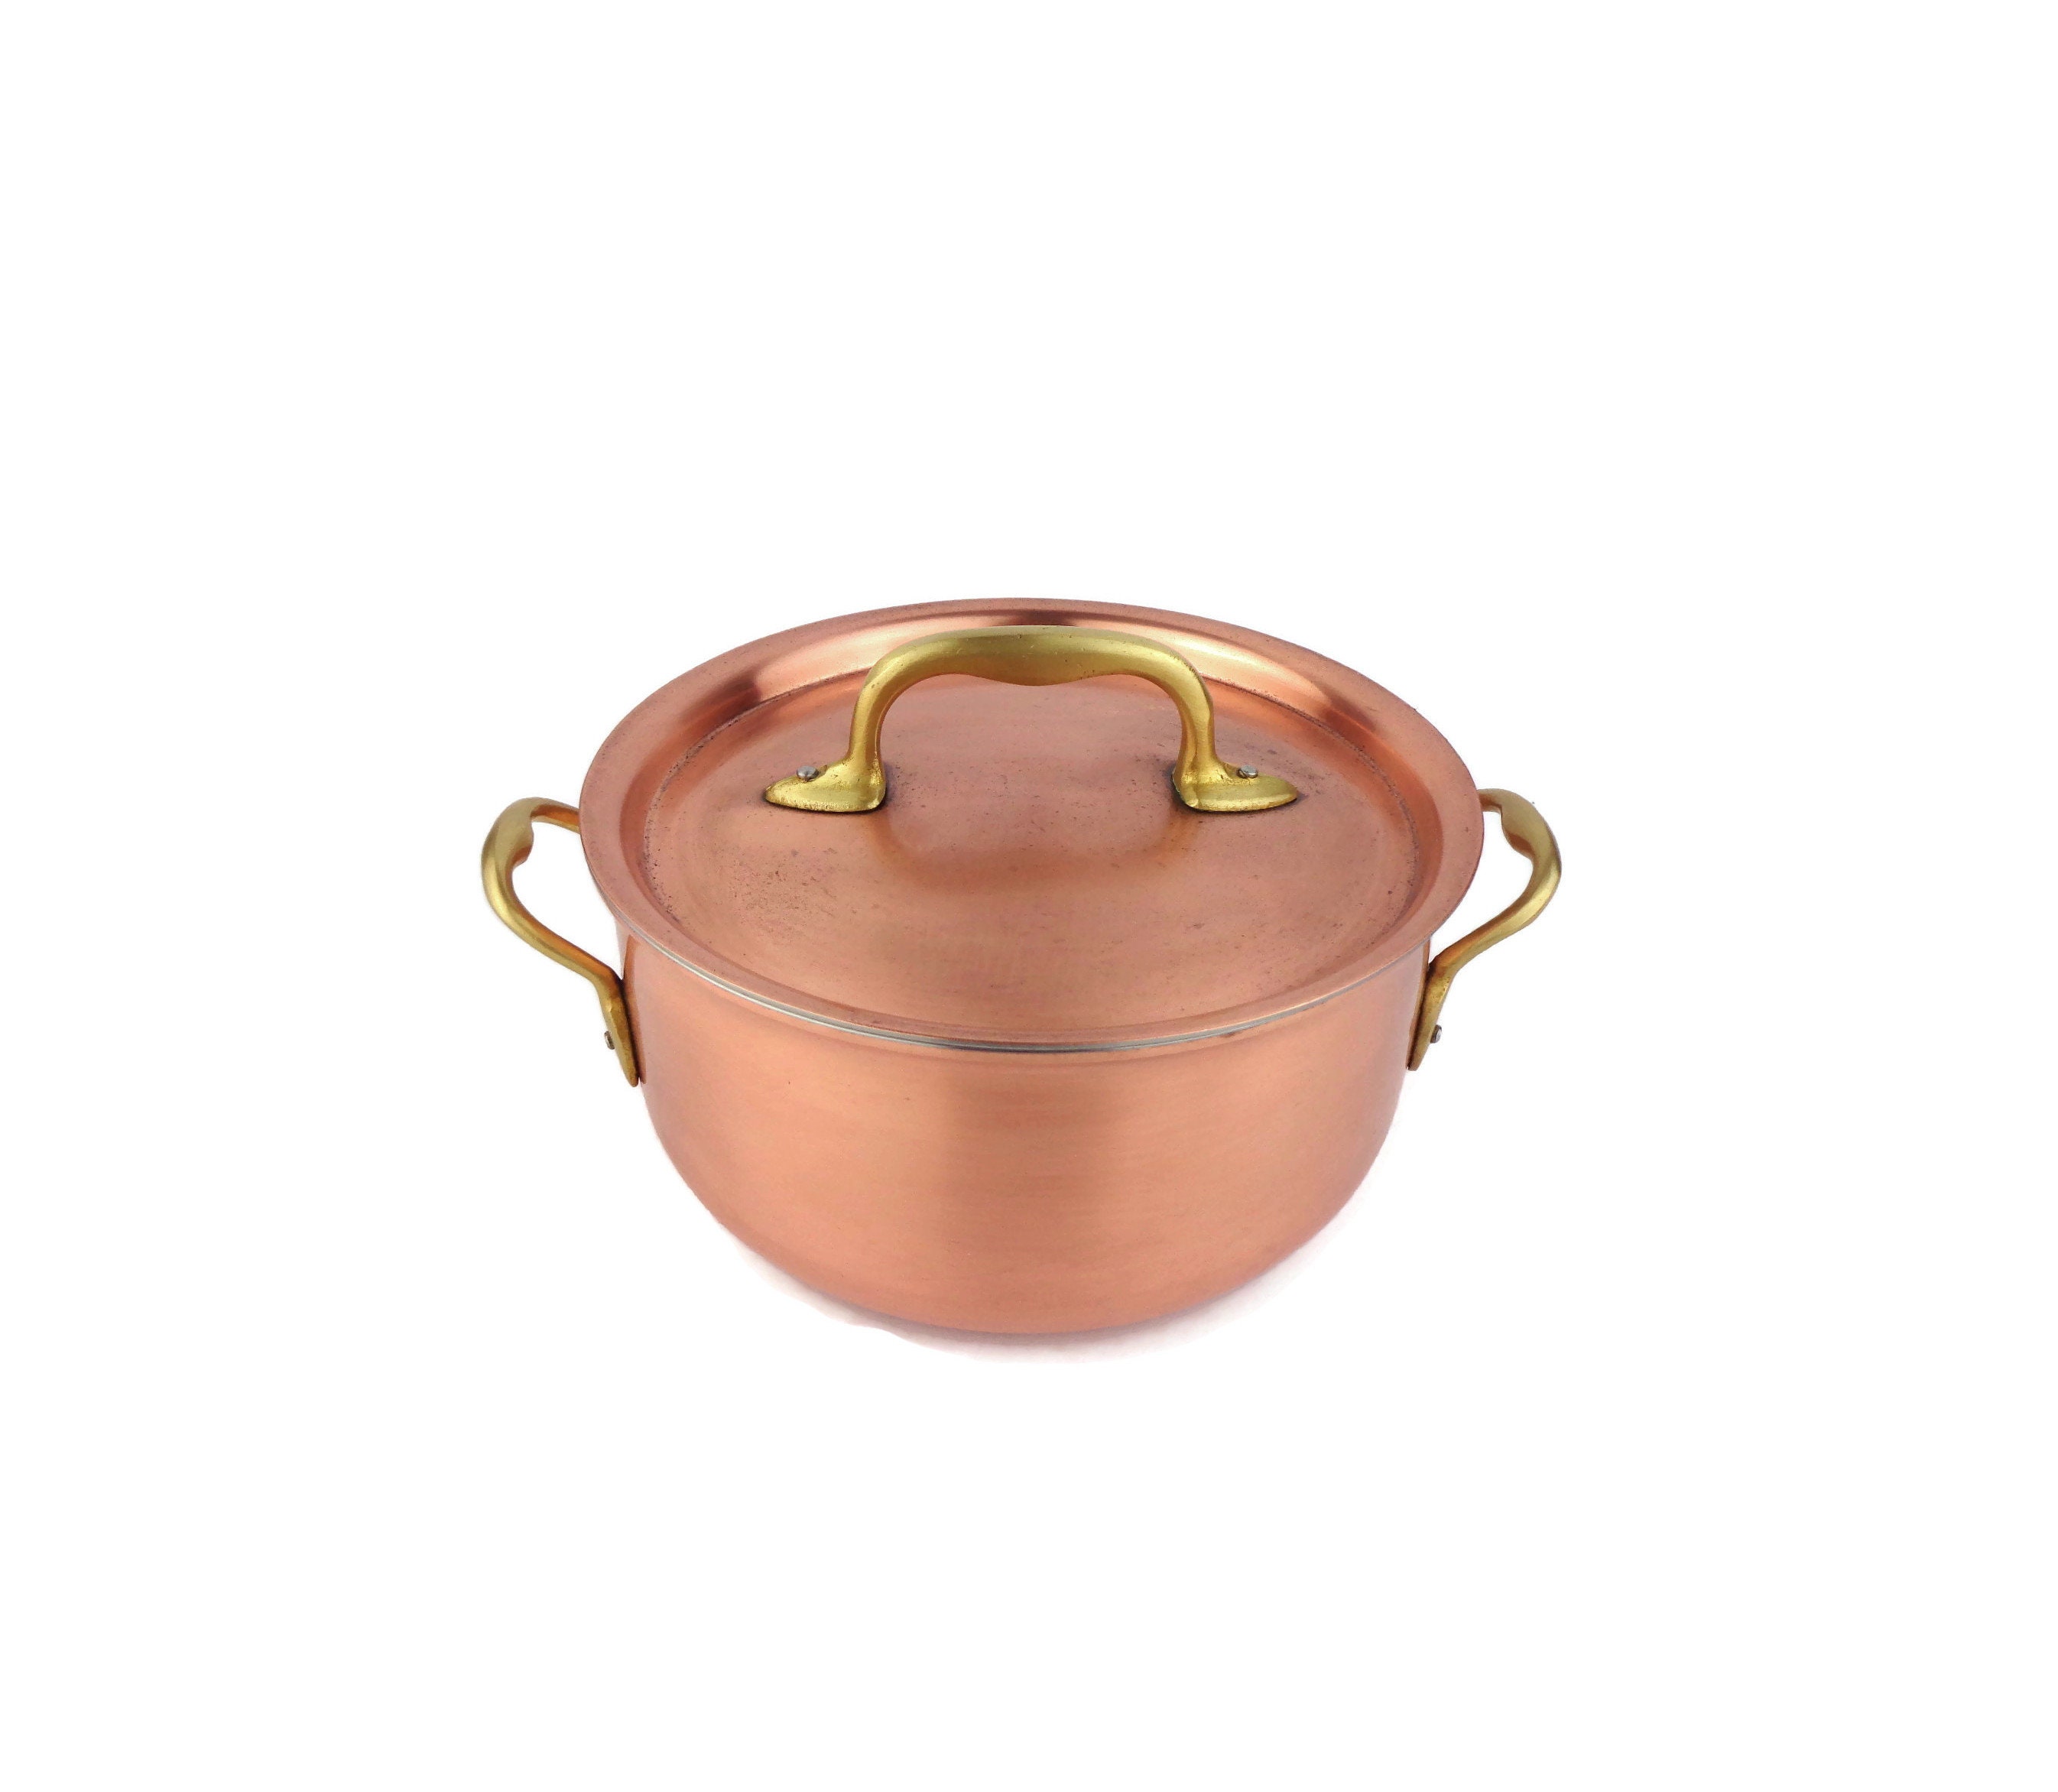 INOCUIVRE SERVICE Copper Saucepan with Brass Handles